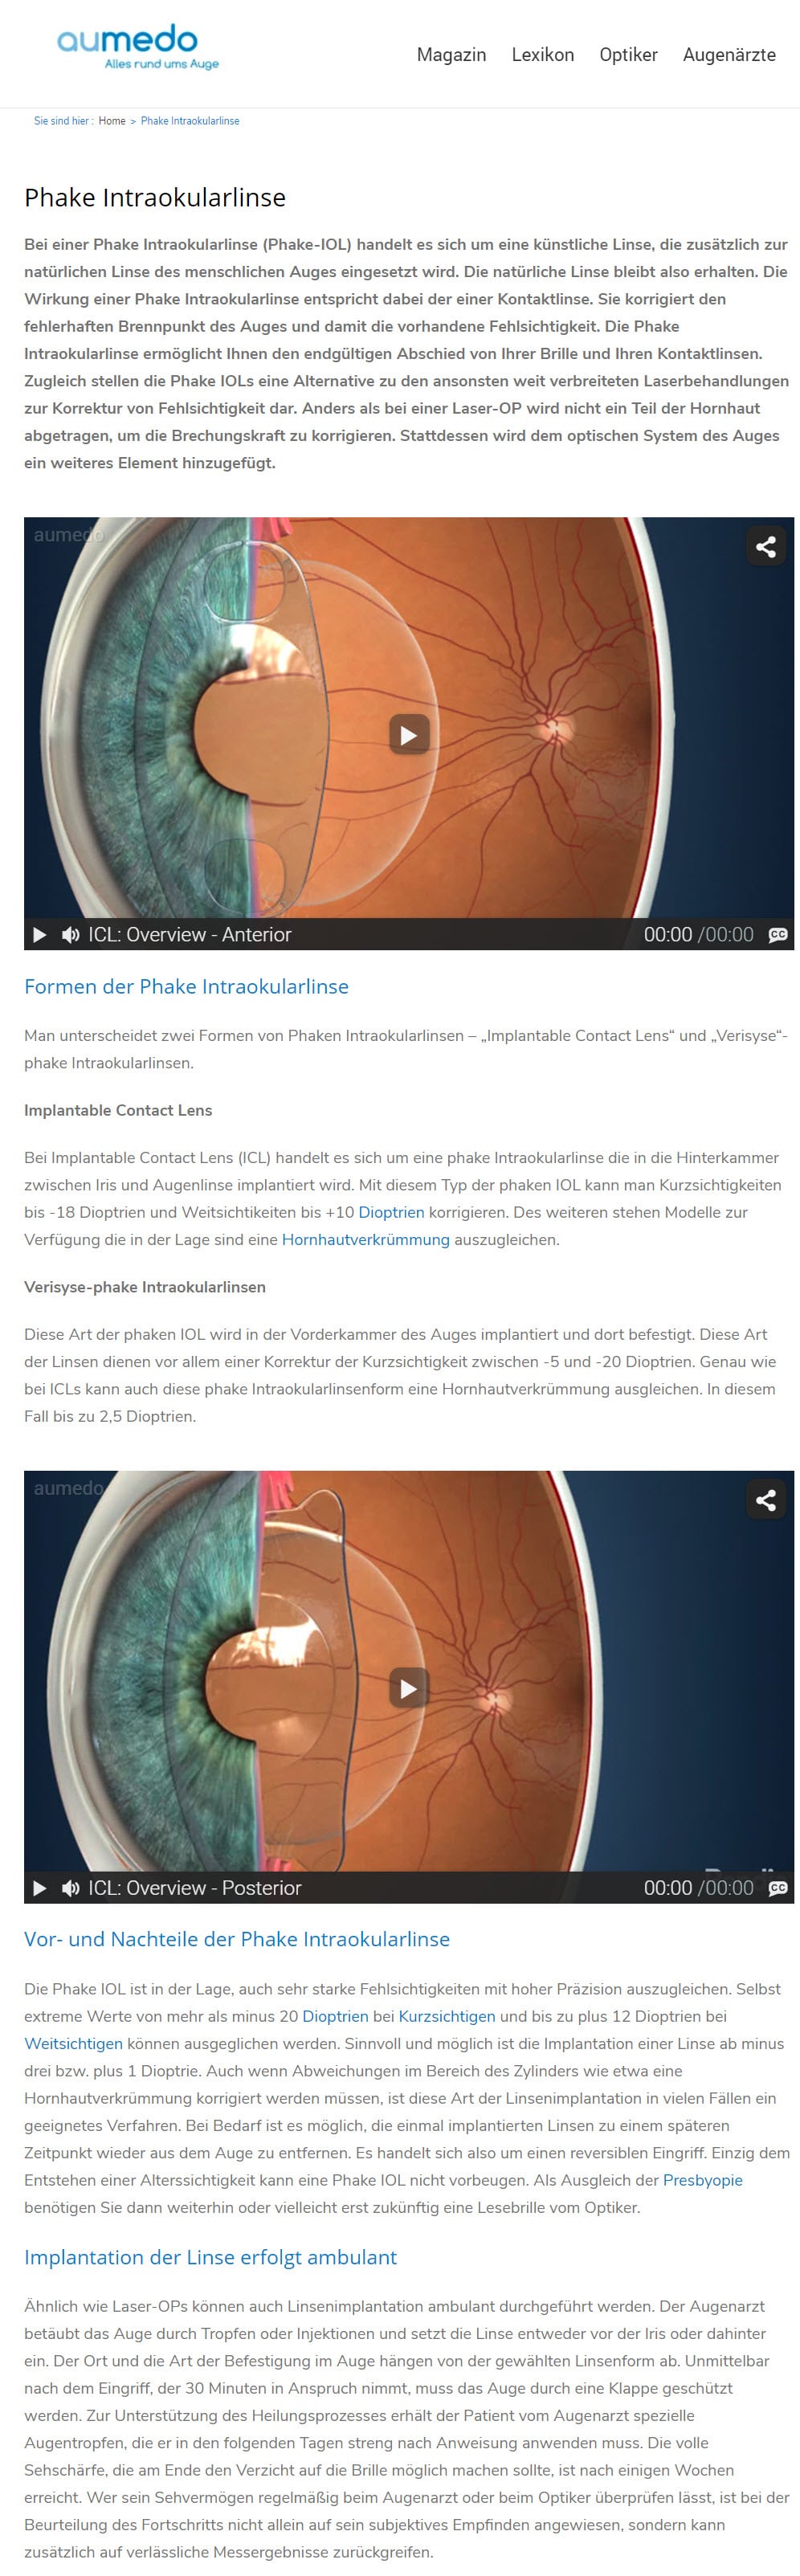 Das Augenportal aumedo.de erläutert sehr schön die zwei Formen von Phaken Intraokularlinsen – „Implantable Contact Lens“ und „Verisyse“-phake Intraokularlinsen - Hinterkammer- vs. Vorderkammer-Linsen